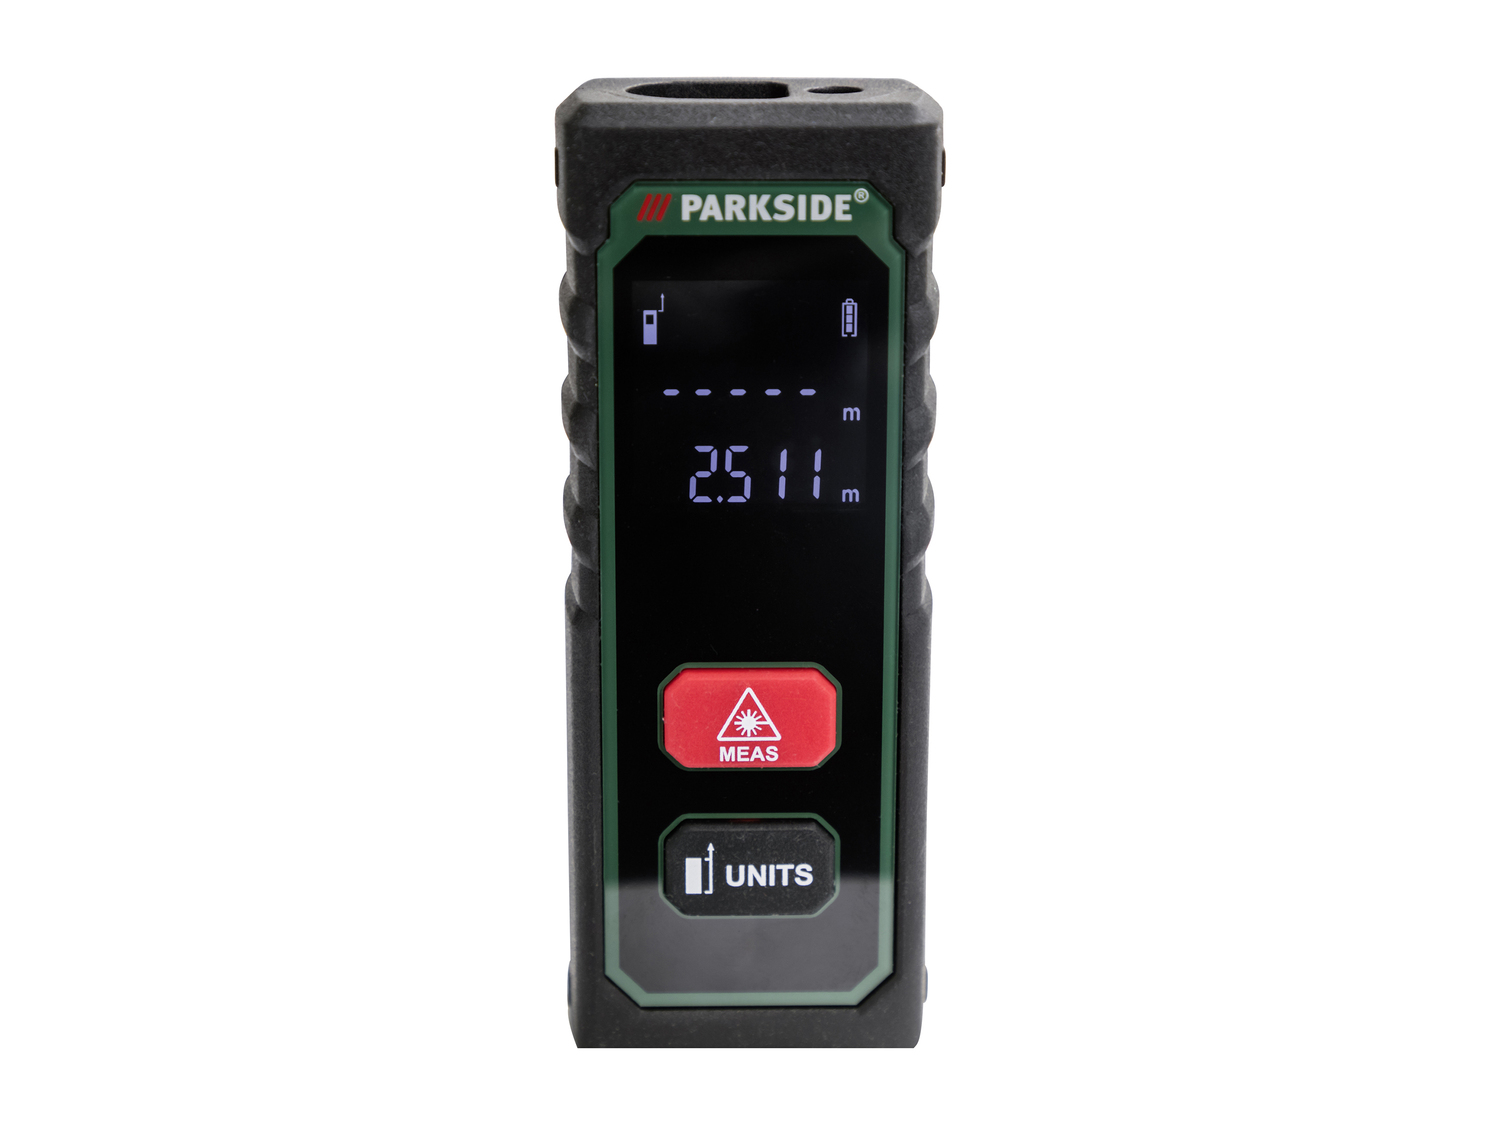 Misuratore di distanza laser Parkside, prezzo 19.99 &#8364; 
- 2 modi di funzionamento:
- ...